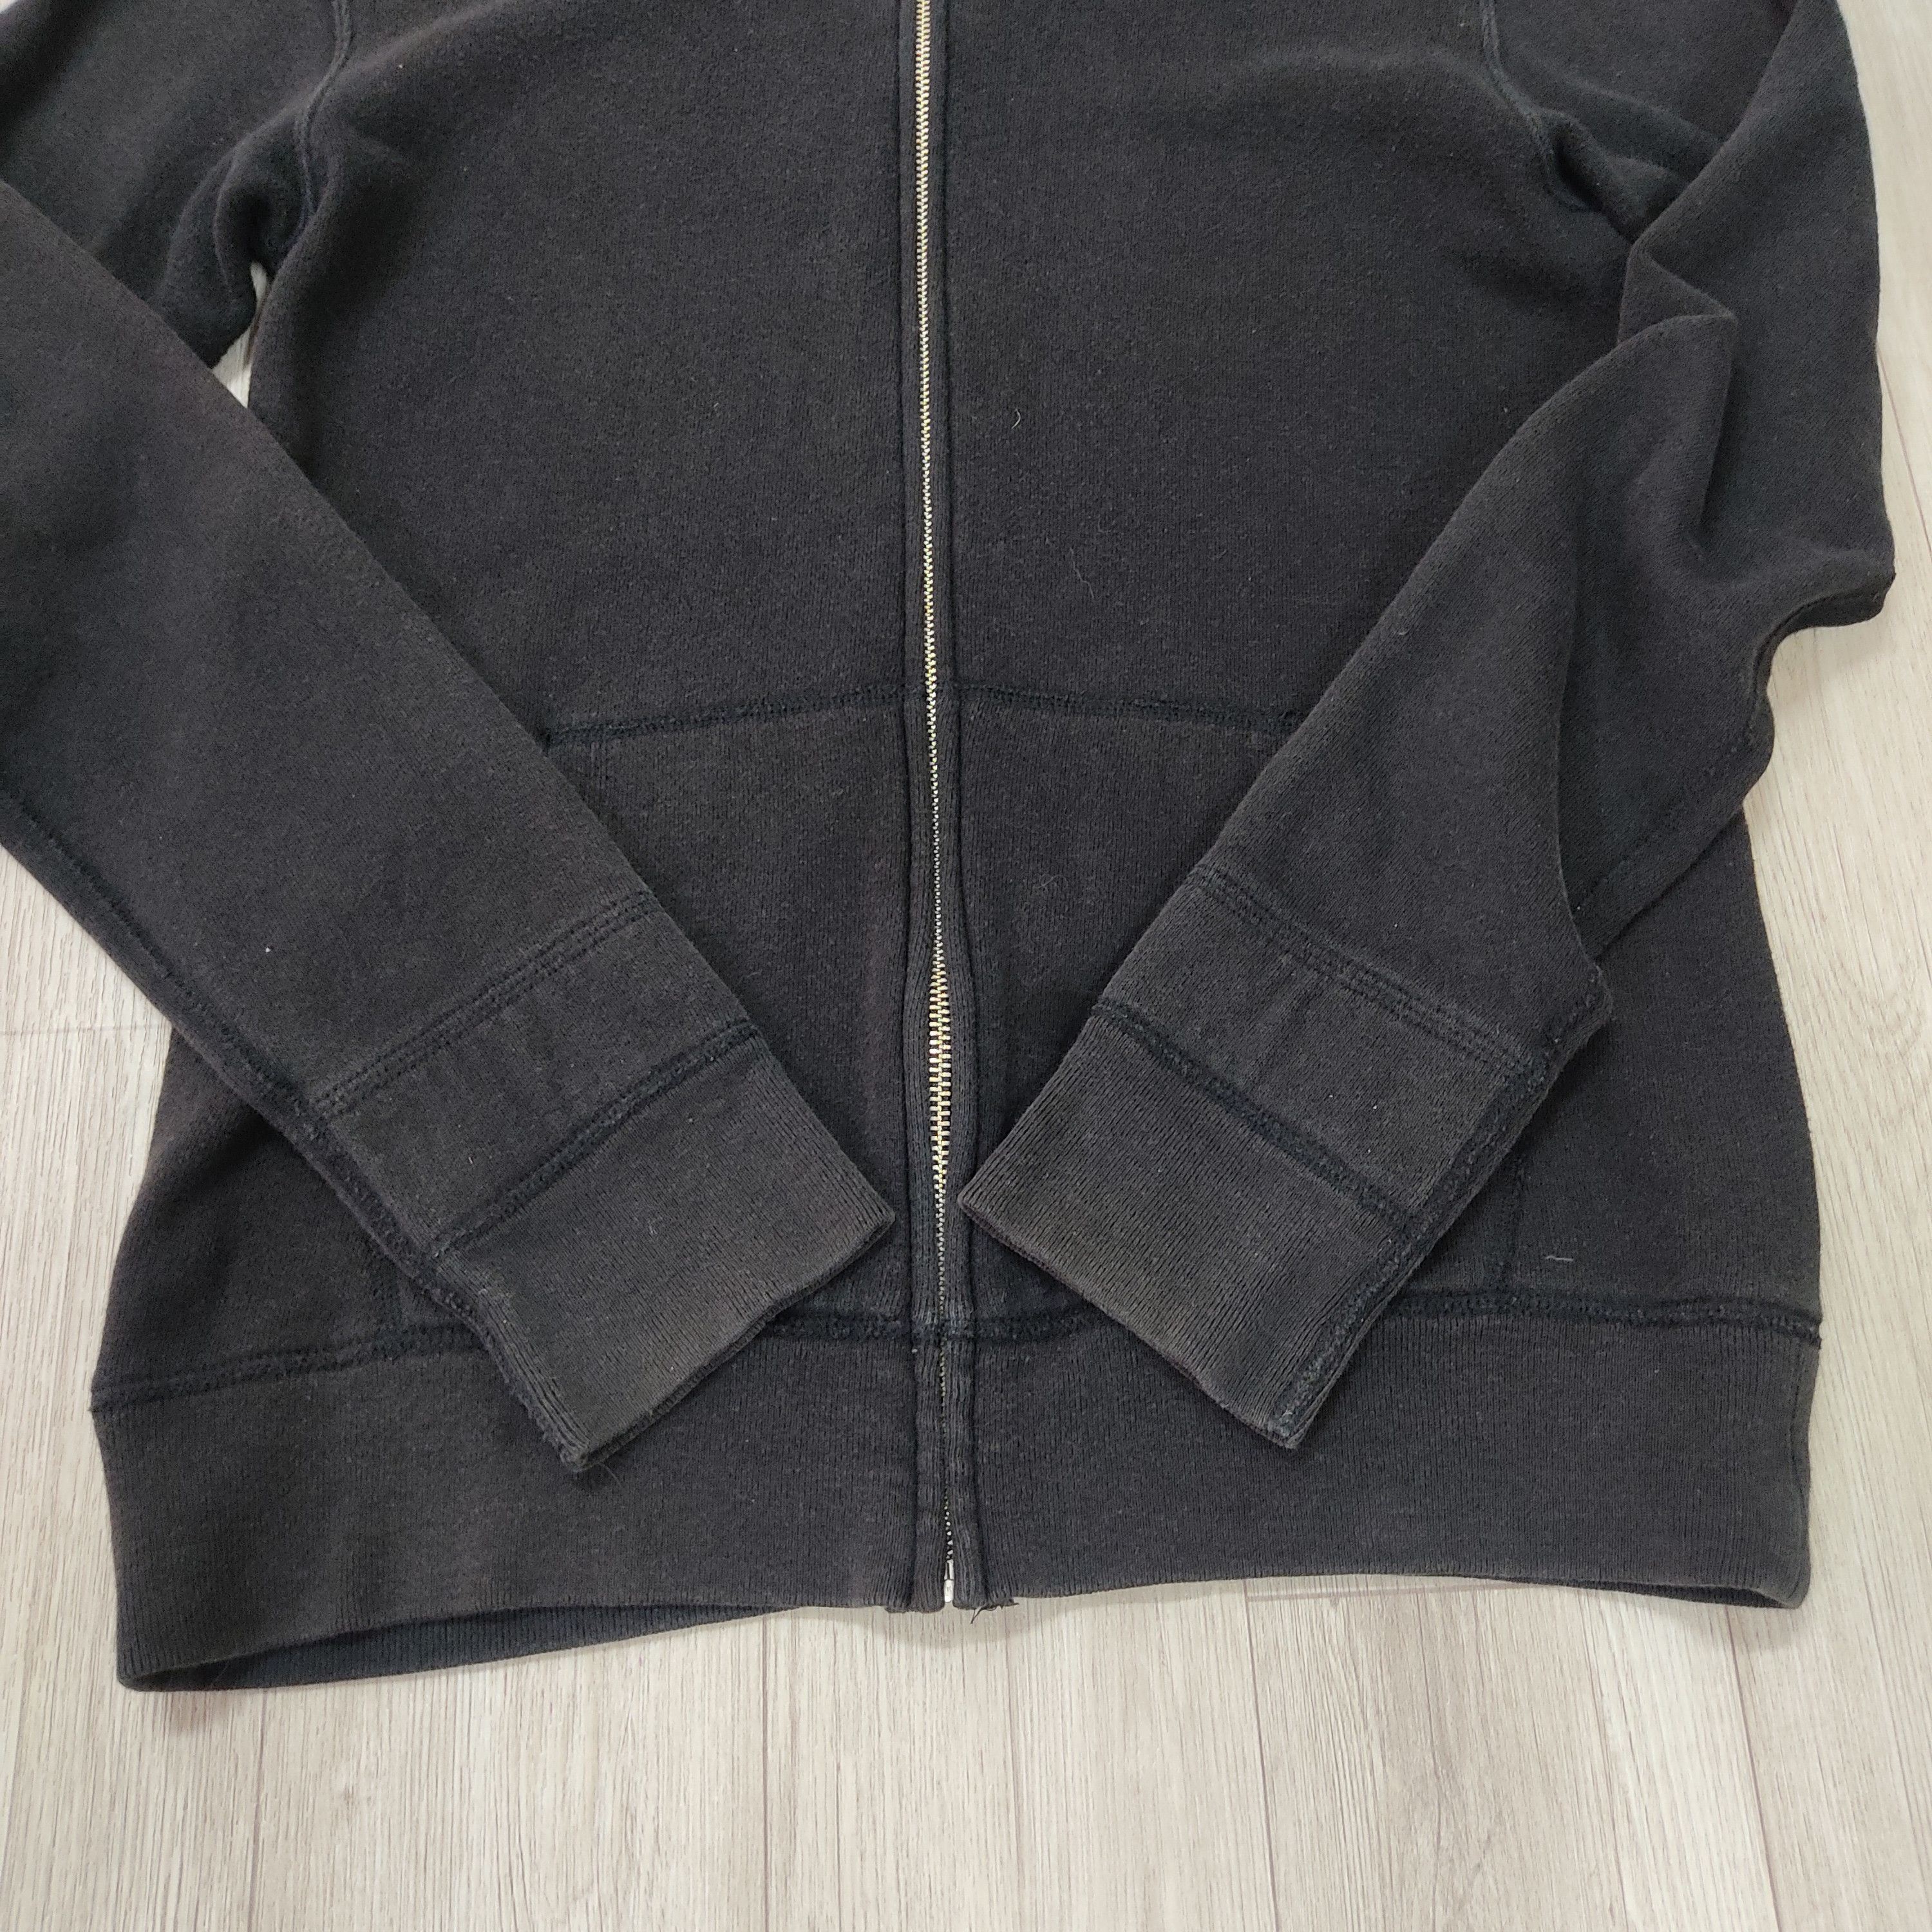 N. HOOLYWOOD Plain Black Zipper Hoodie Sweatshirt - 5